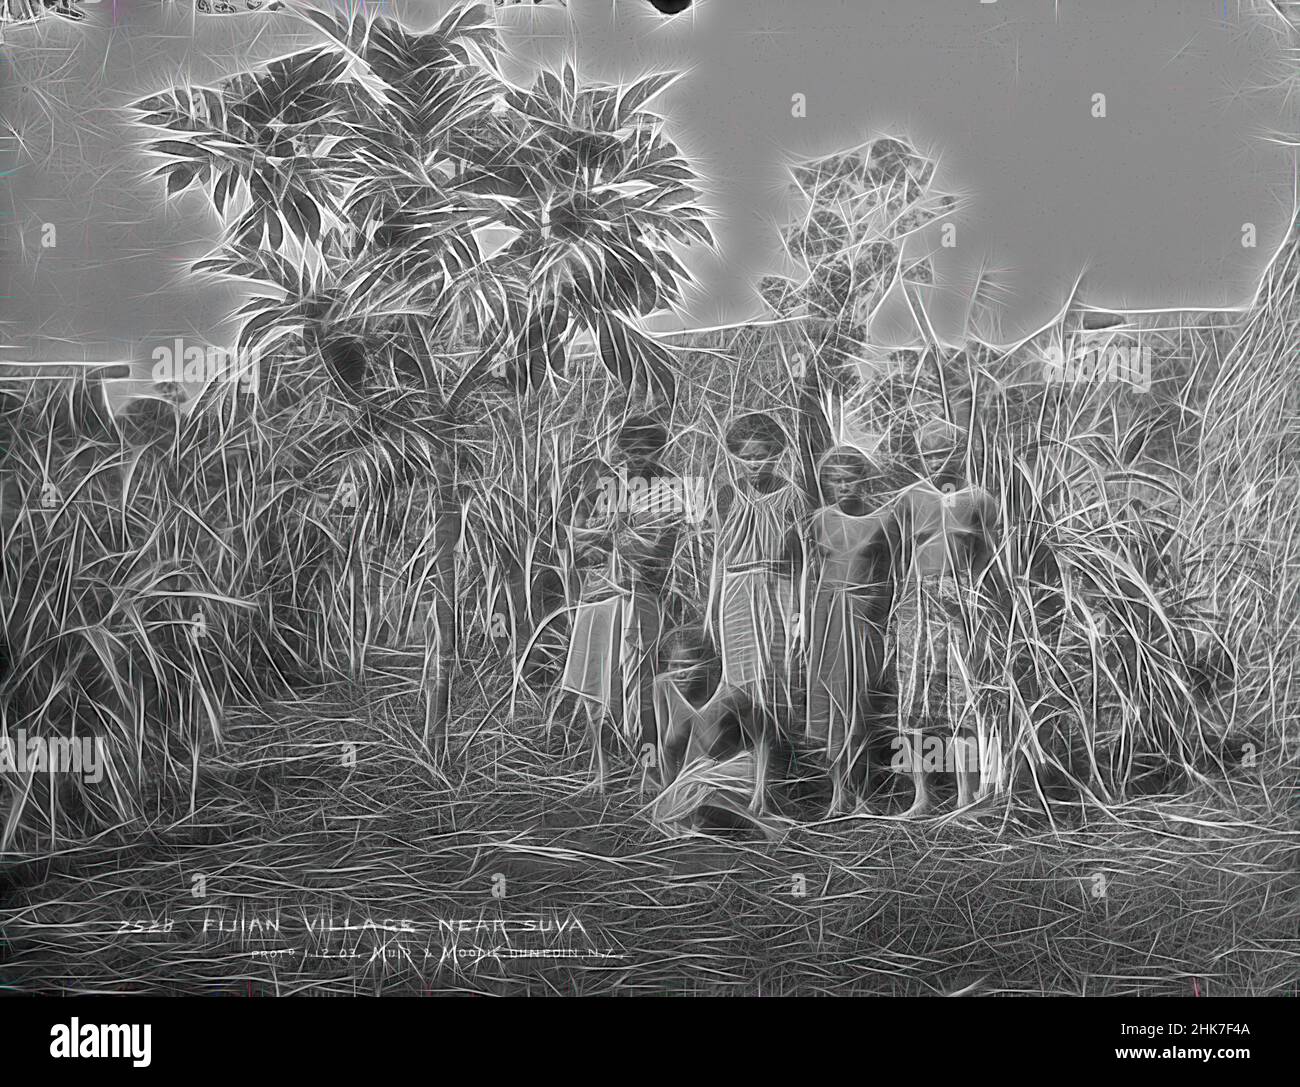 Ispirato dal villaggio Fijiano vicino a Suva, studio Burton Brothers, studio fotografico, 12 luglio 1884, Nuova Zelanda, Fotografia in bianco e nero, una donna seduta di fronte a quattro donne in standiing, una con il bambino nelle sue braccia. Un piccolo albero di breadfruit sta ombreggiando la donna con il bambino, dietro c'è una pianta di zucchero, Reimagined da Artotop. L'arte classica reinventata con un tocco moderno. Design di calda e allegra luminosità e di raggi di luce. La fotografia si ispira al surrealismo e al futurismo, abbracciando l'energia dinamica della tecnologia moderna, del movimento, della velocità e rivoluzionando la cultura Foto Stock